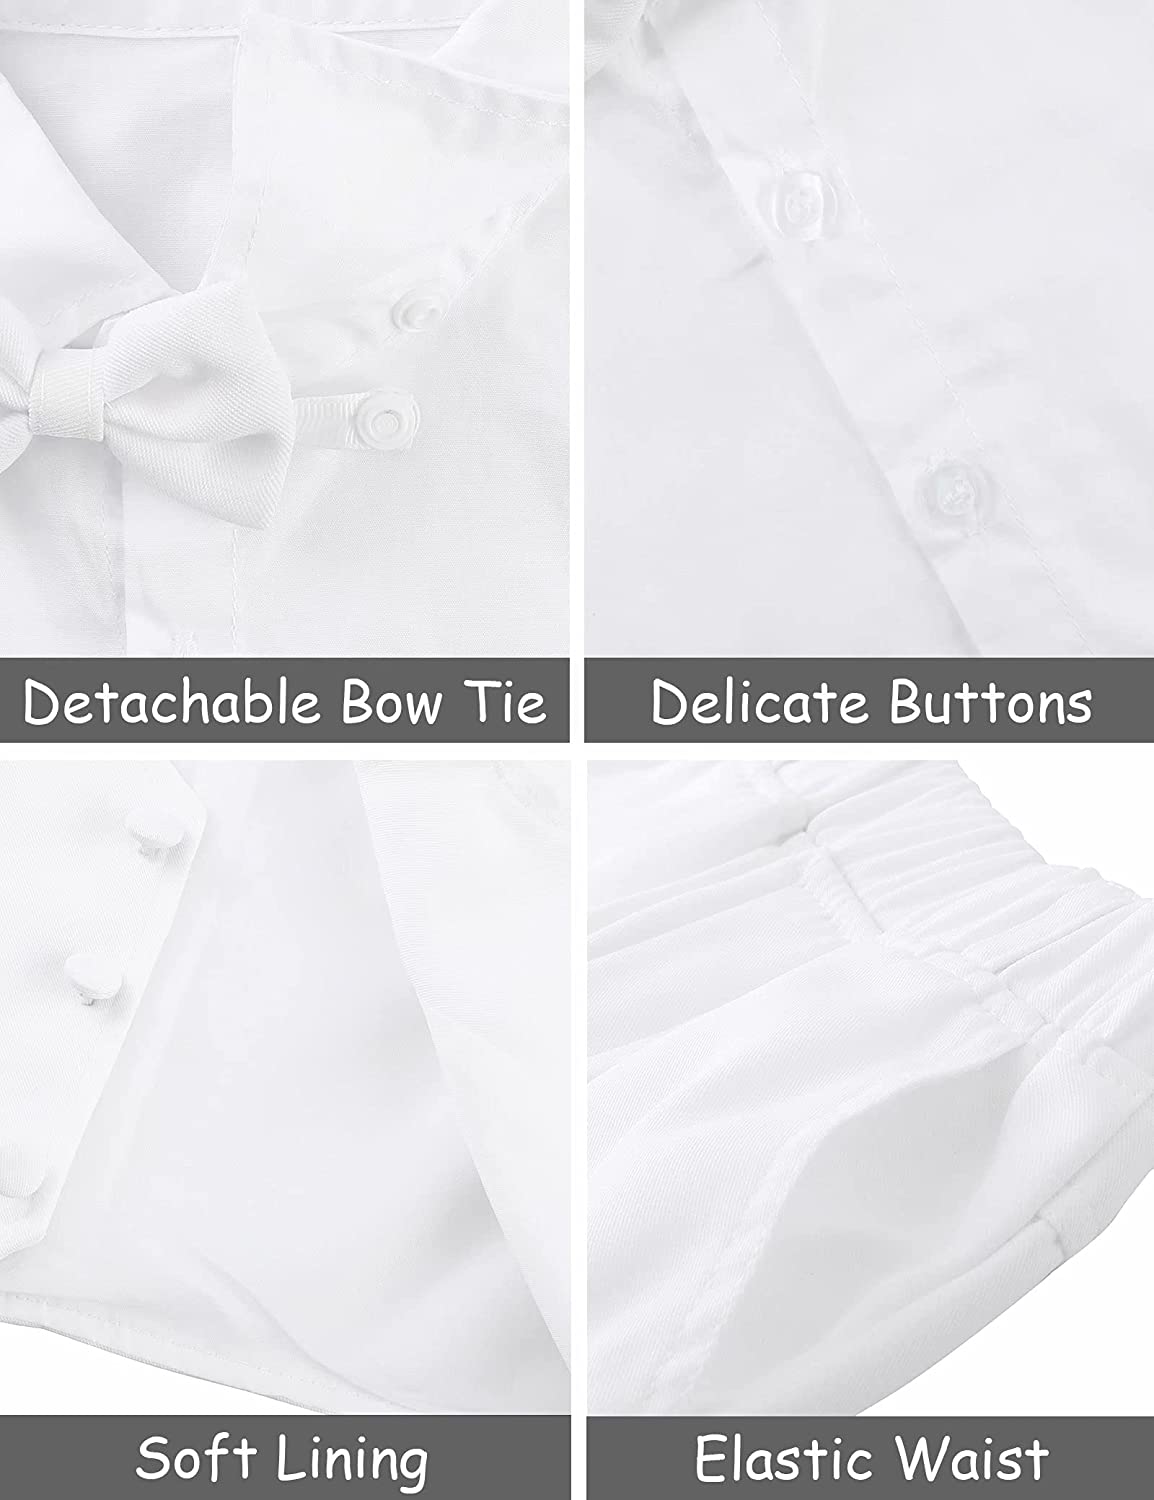 A&J DESIGN Baby Toddler Boys Baptism Oufits Gentleman Suit Set, 3pcs Outfits Shirts & Vest & Pants